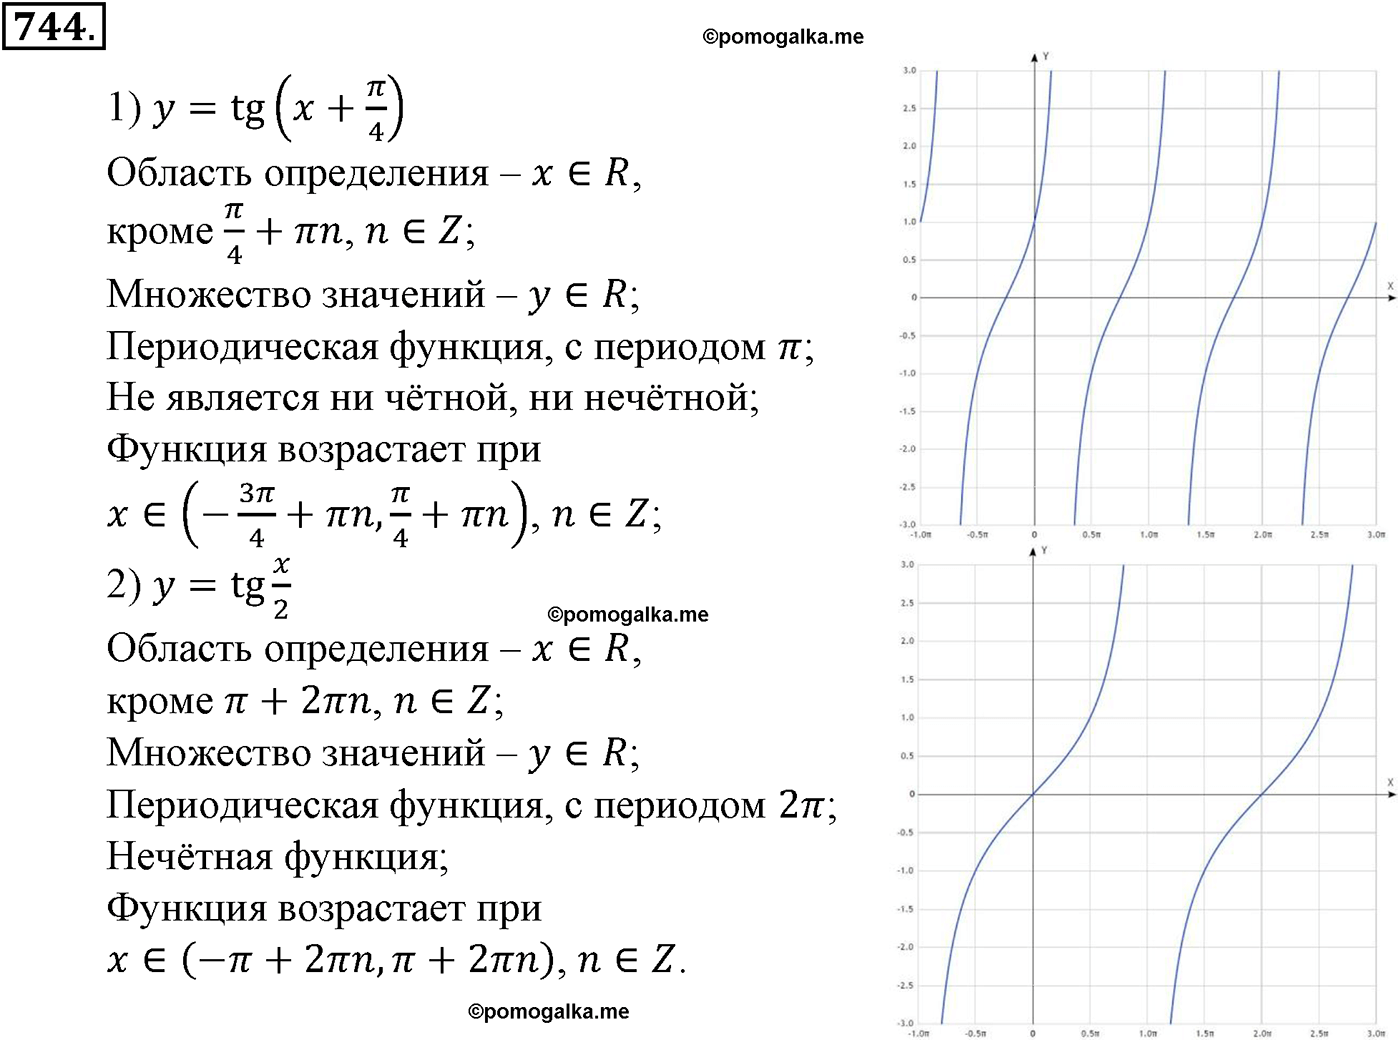 разбор задачи №744 по алгебре за 10-11 класс из учебника Алимова, Колягина